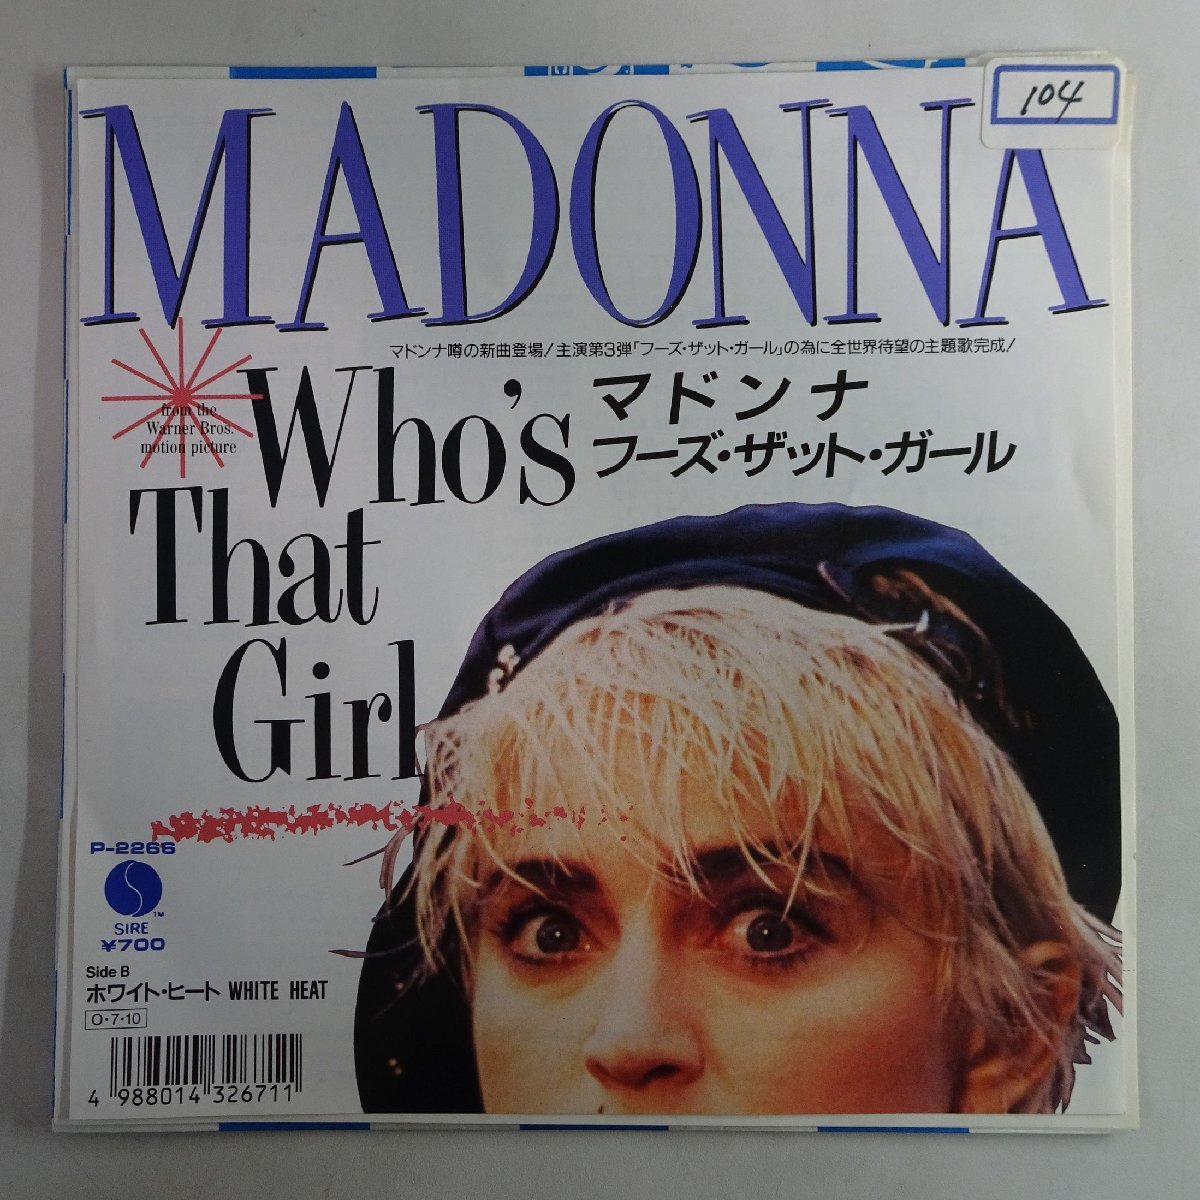 18037830;【国内盤/7inch】Madonna マドンナ / フーズ・ザット・ガール / ホワイト・ヒート_画像1